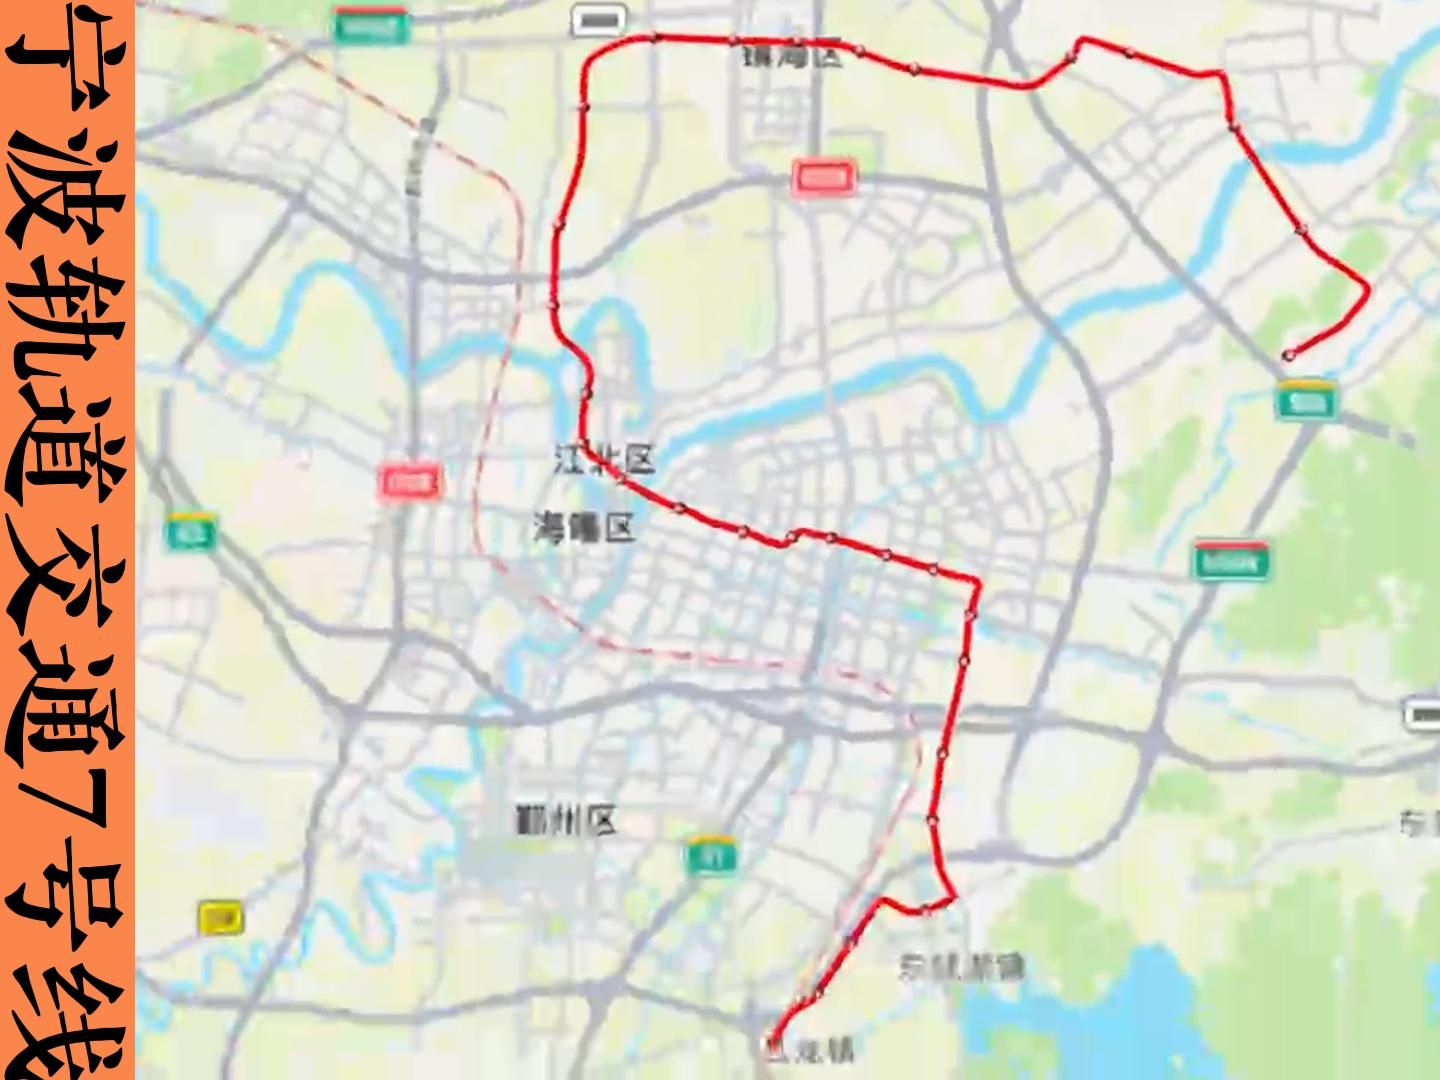 宁波轨道7号线线路图图片